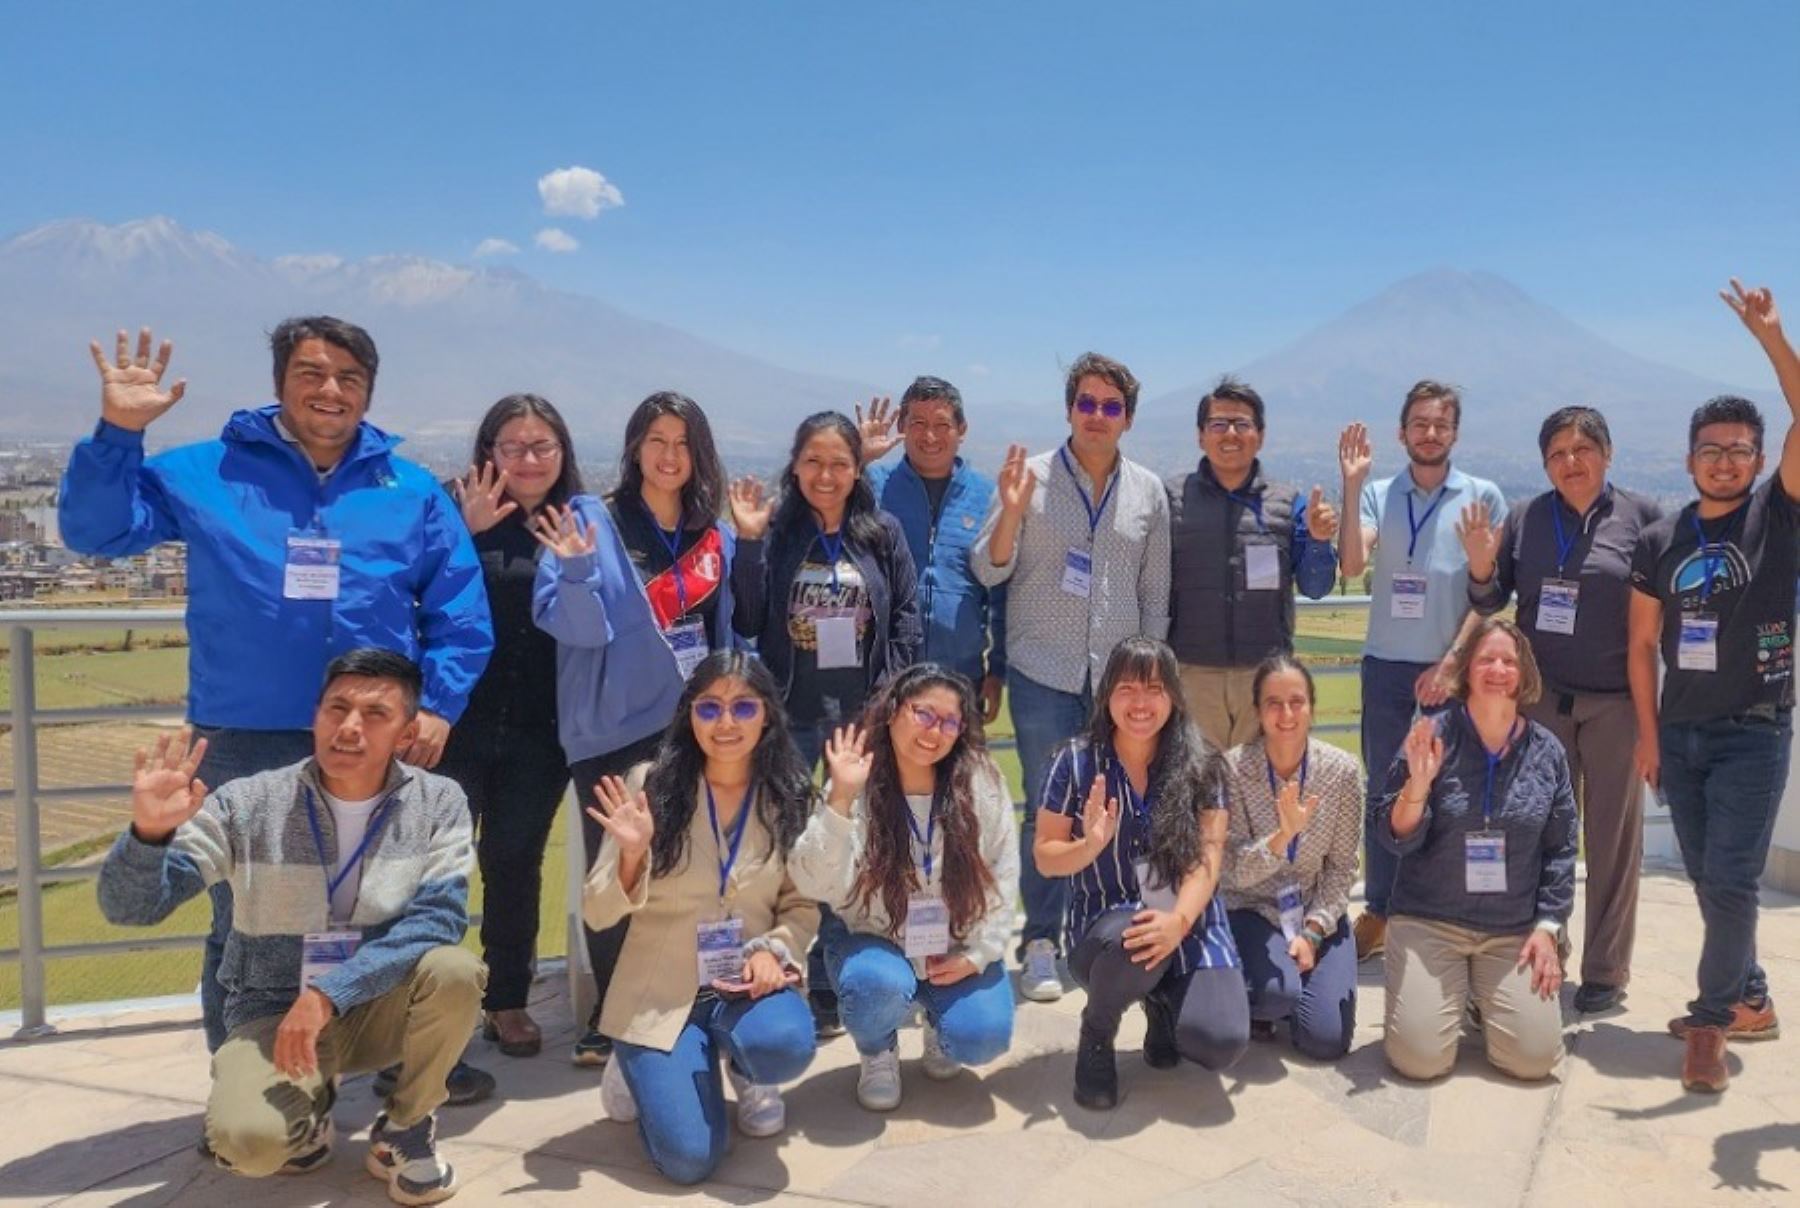 Quince profesionales peruanos participaron del curso especializado “Procesamiento de imágenes SAR para el monitoreo de volcanes”, el cual fue organizado por el Instituto Geofísico del Perú (IGP), organismo adscrito al Ministerio del Ambiente, en cooperación con el Instituto de Investigación para el Desarrollo de Francia.